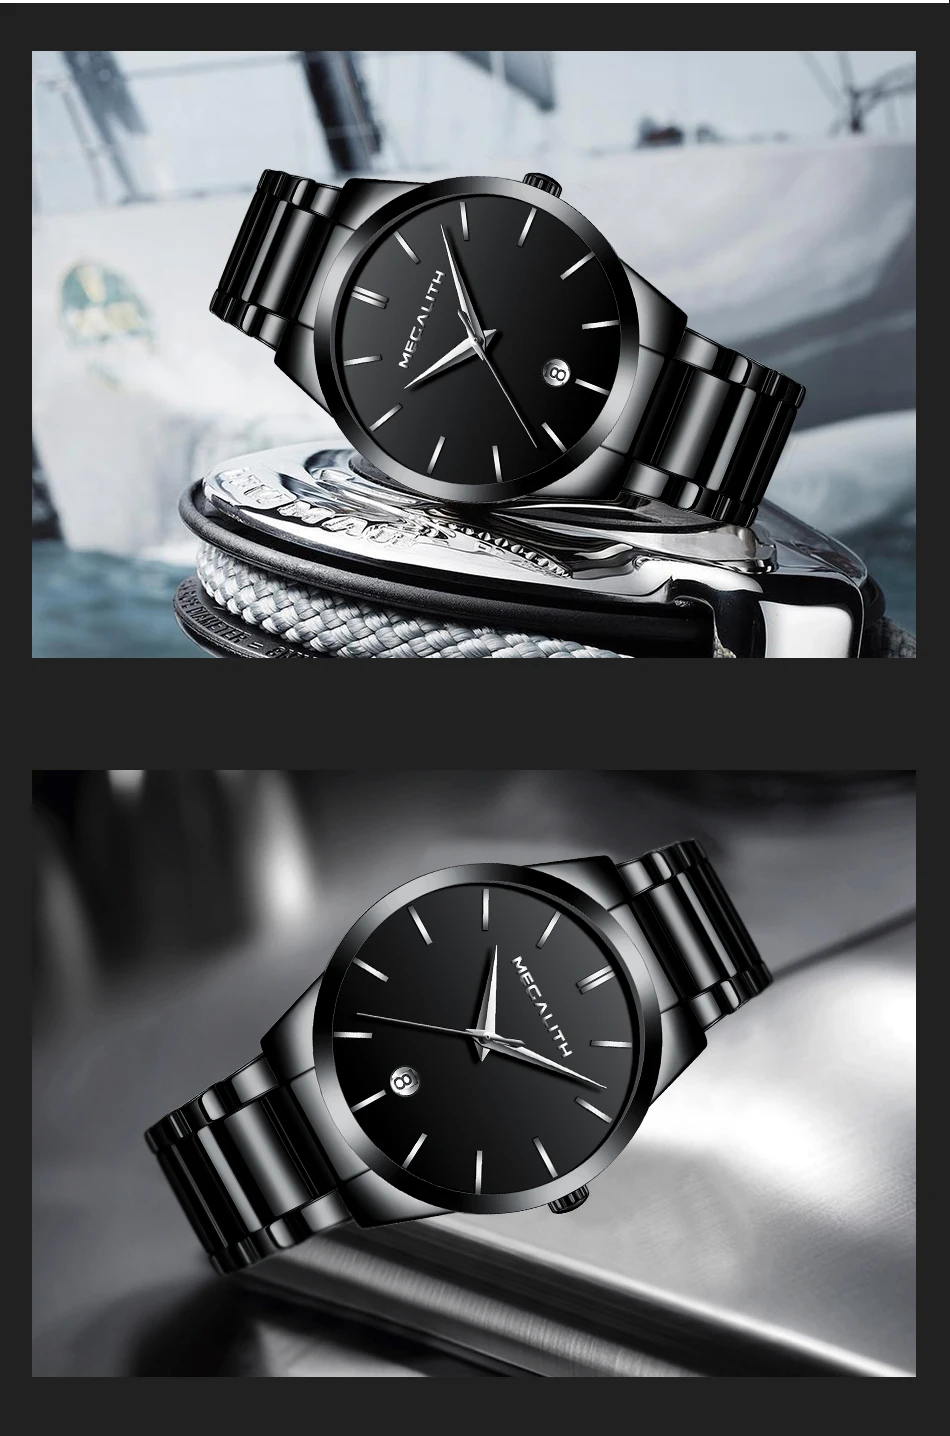 MEGALITH мужские часы 9,99$ спортивные водонепроницаемые светящиеся кварцевые часы стальной сетчатый ремешок наручные часы Мужские часы цена 0047